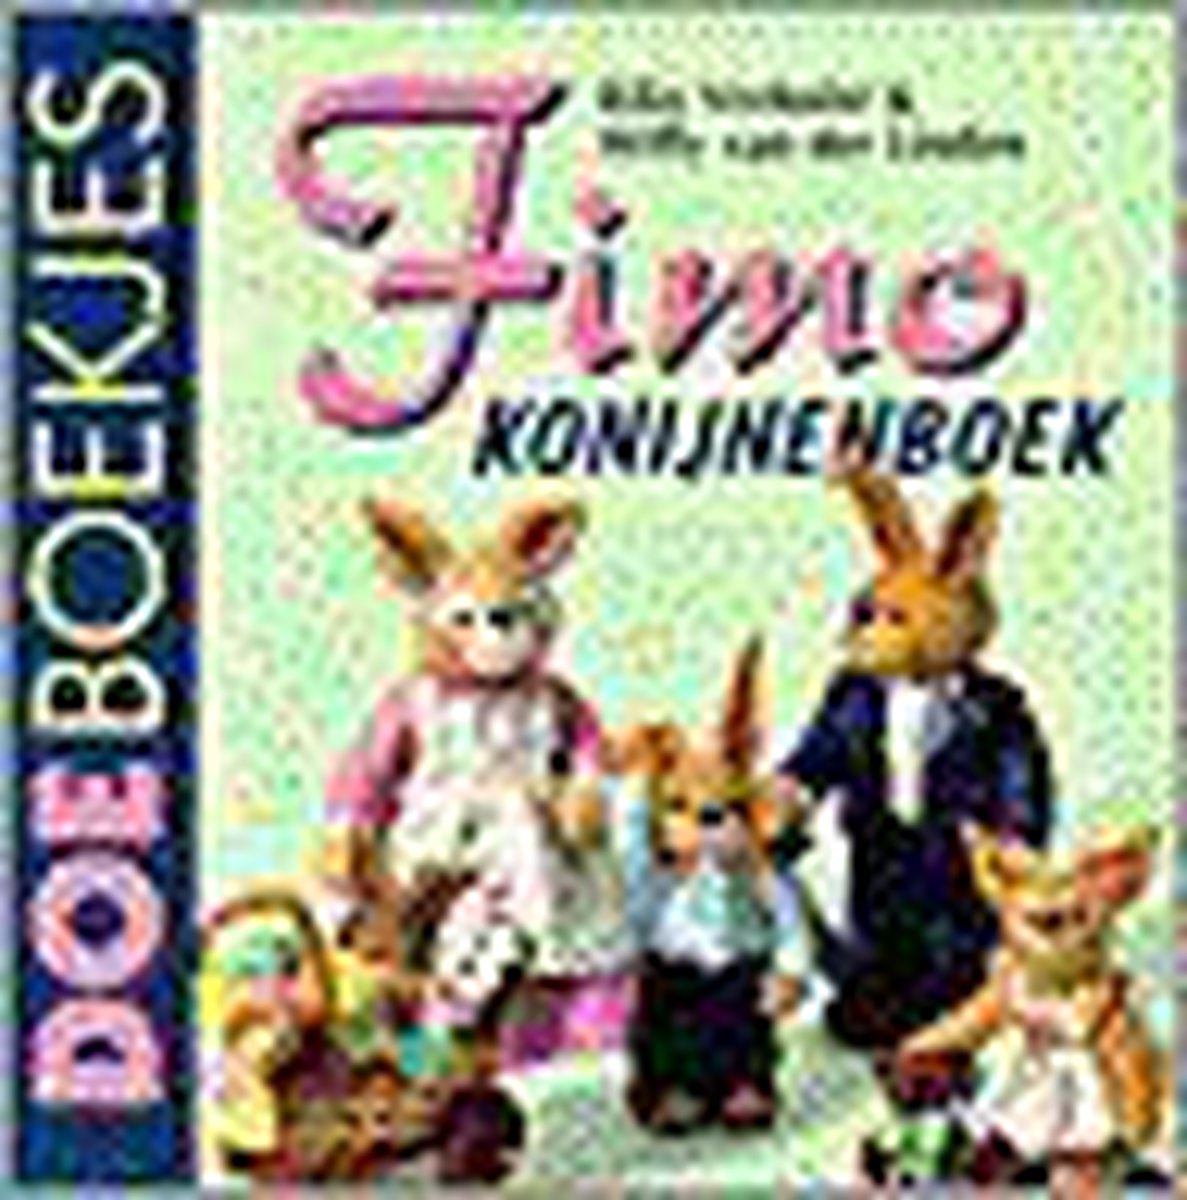 Fimo konijnenboek / Doeboekjes